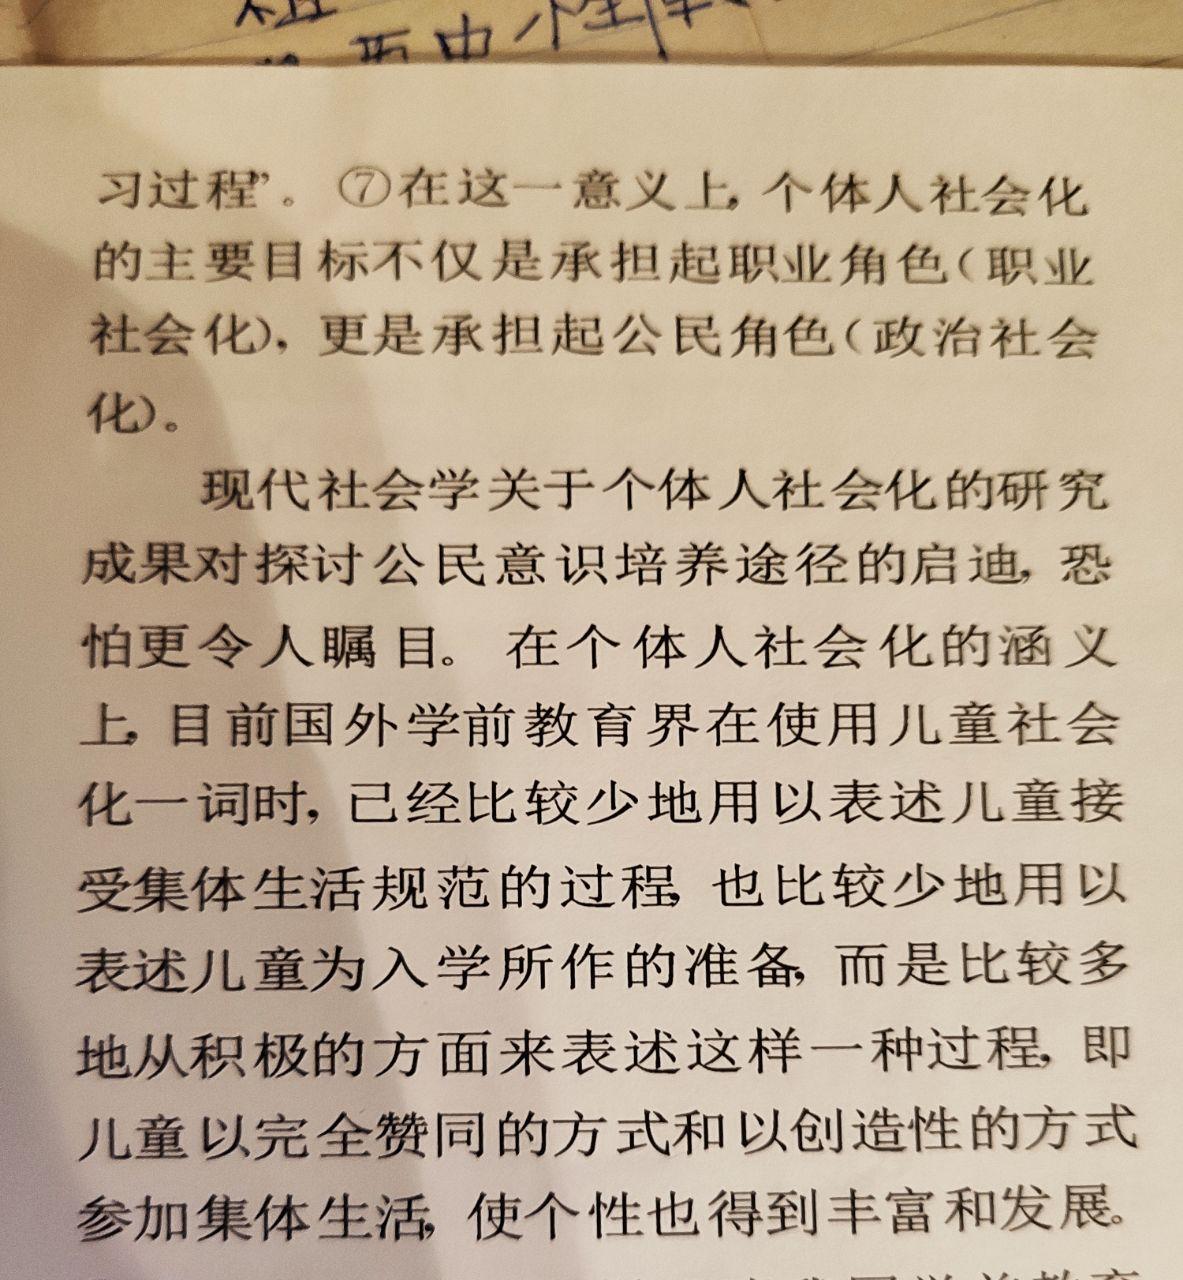 Перевод текста на китайском по фото